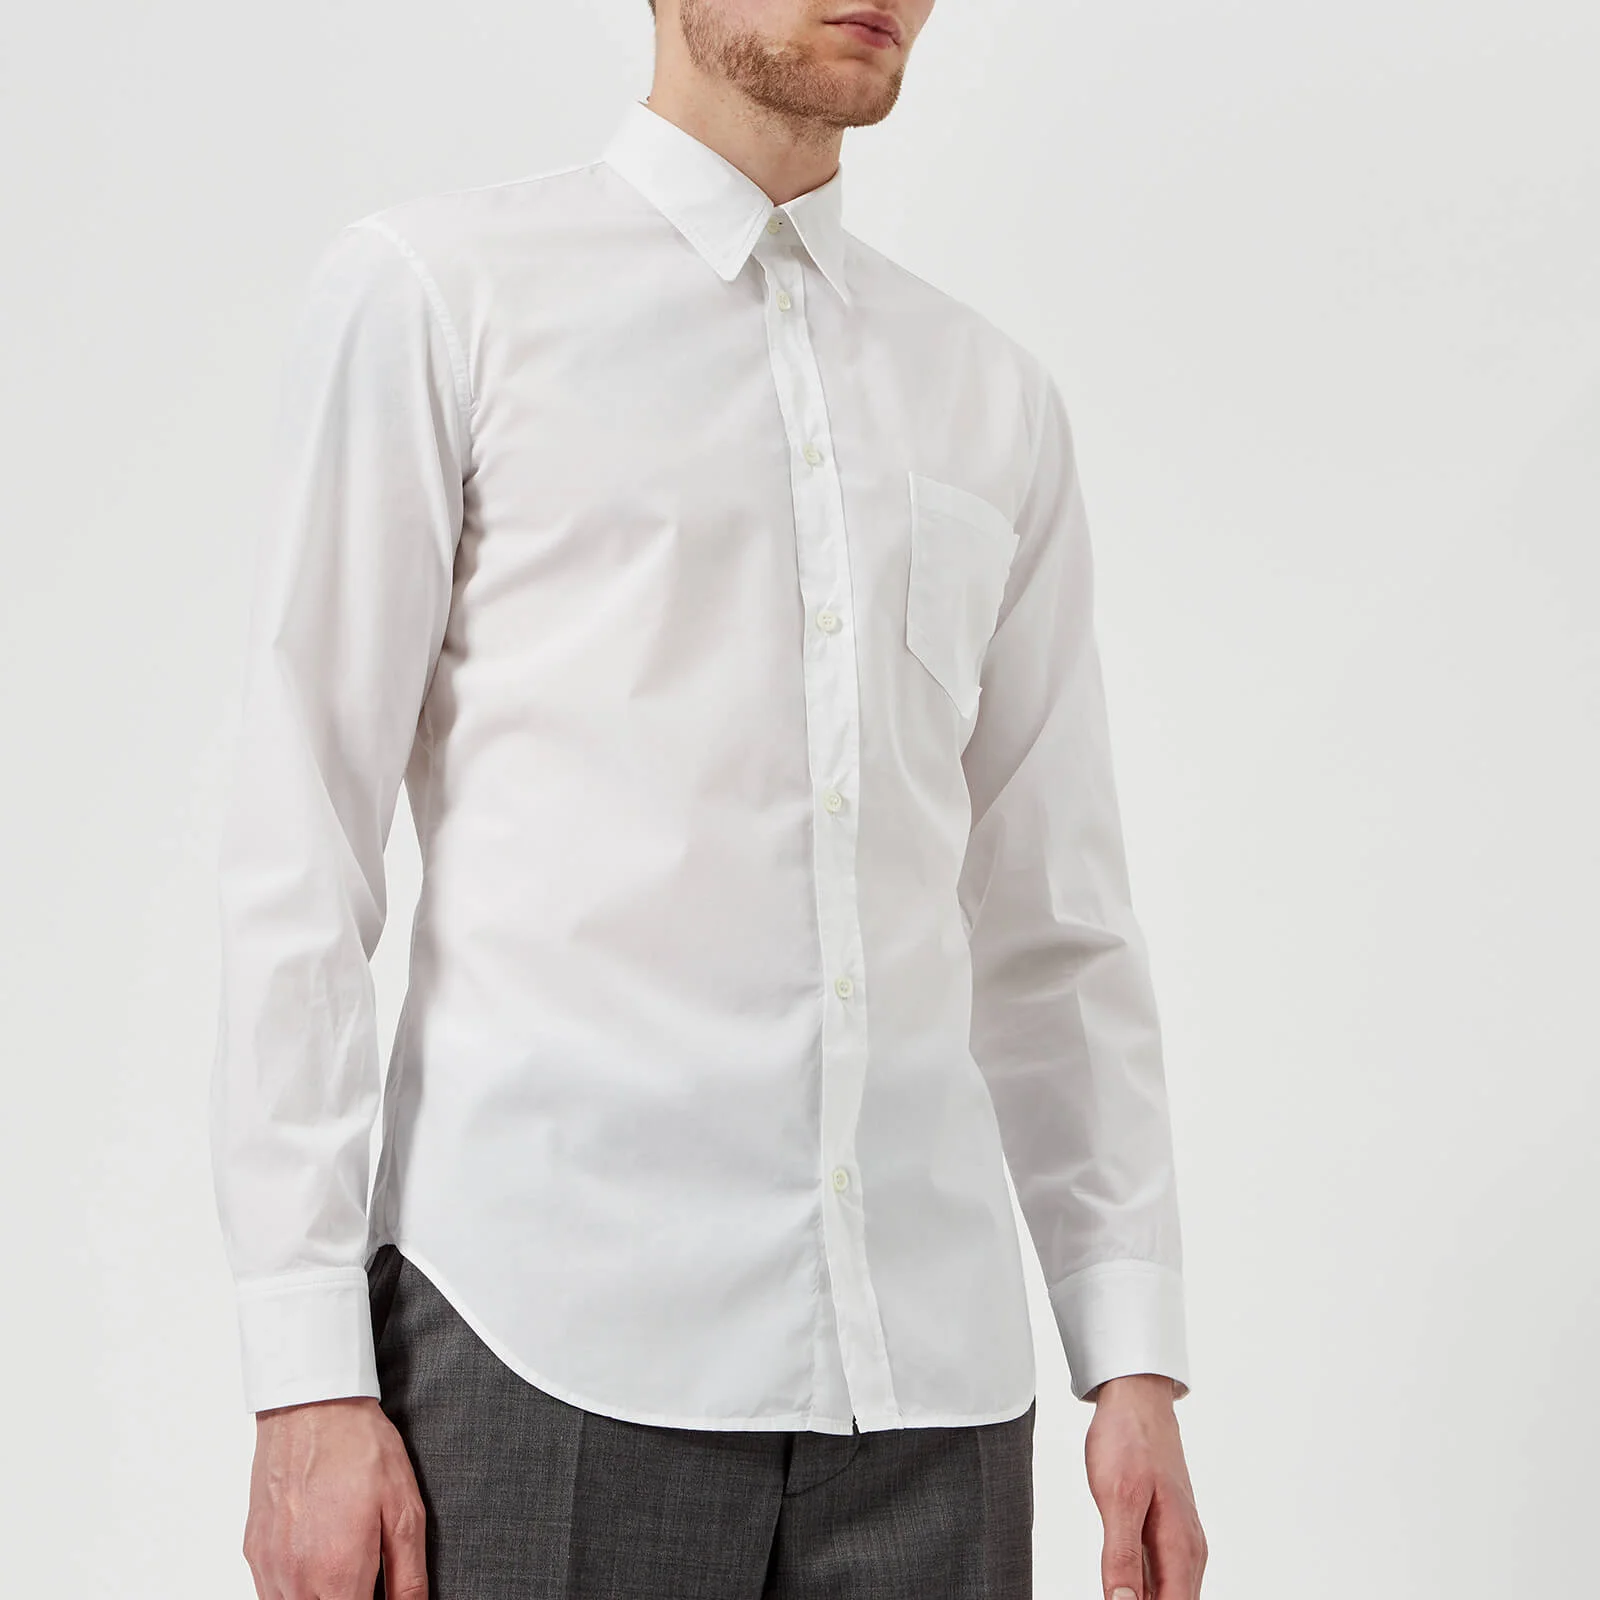 Maison Margiela Men's Cotton Poplin Ready to Dye Slim Fit Shirt - White Image 1